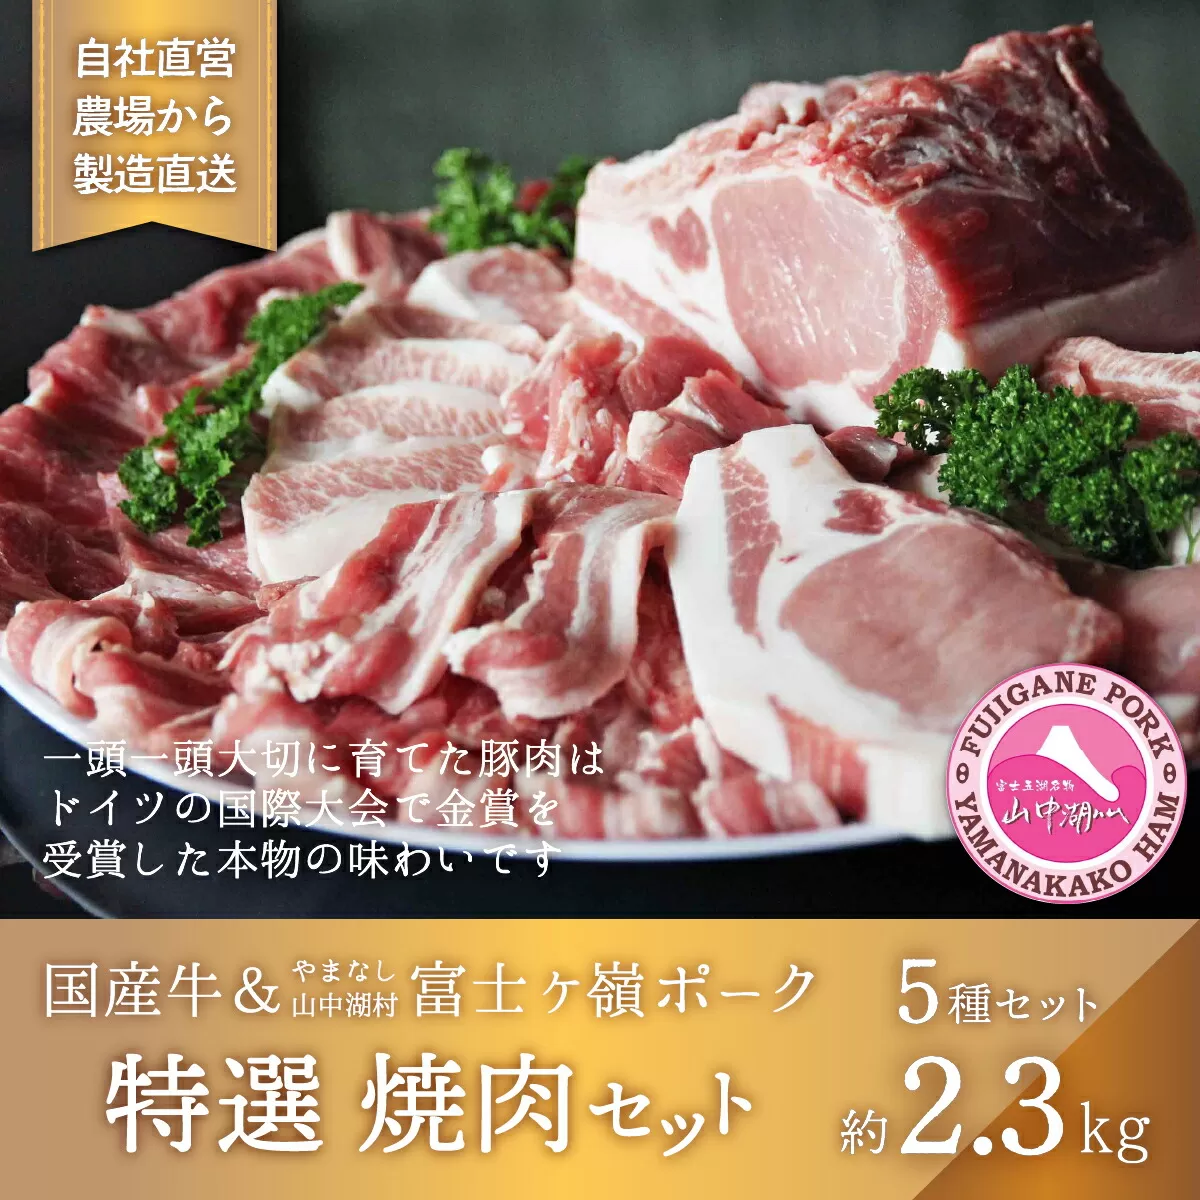 【特選】国産牛・富士ヶ嶺豚の焼肉セット YB051